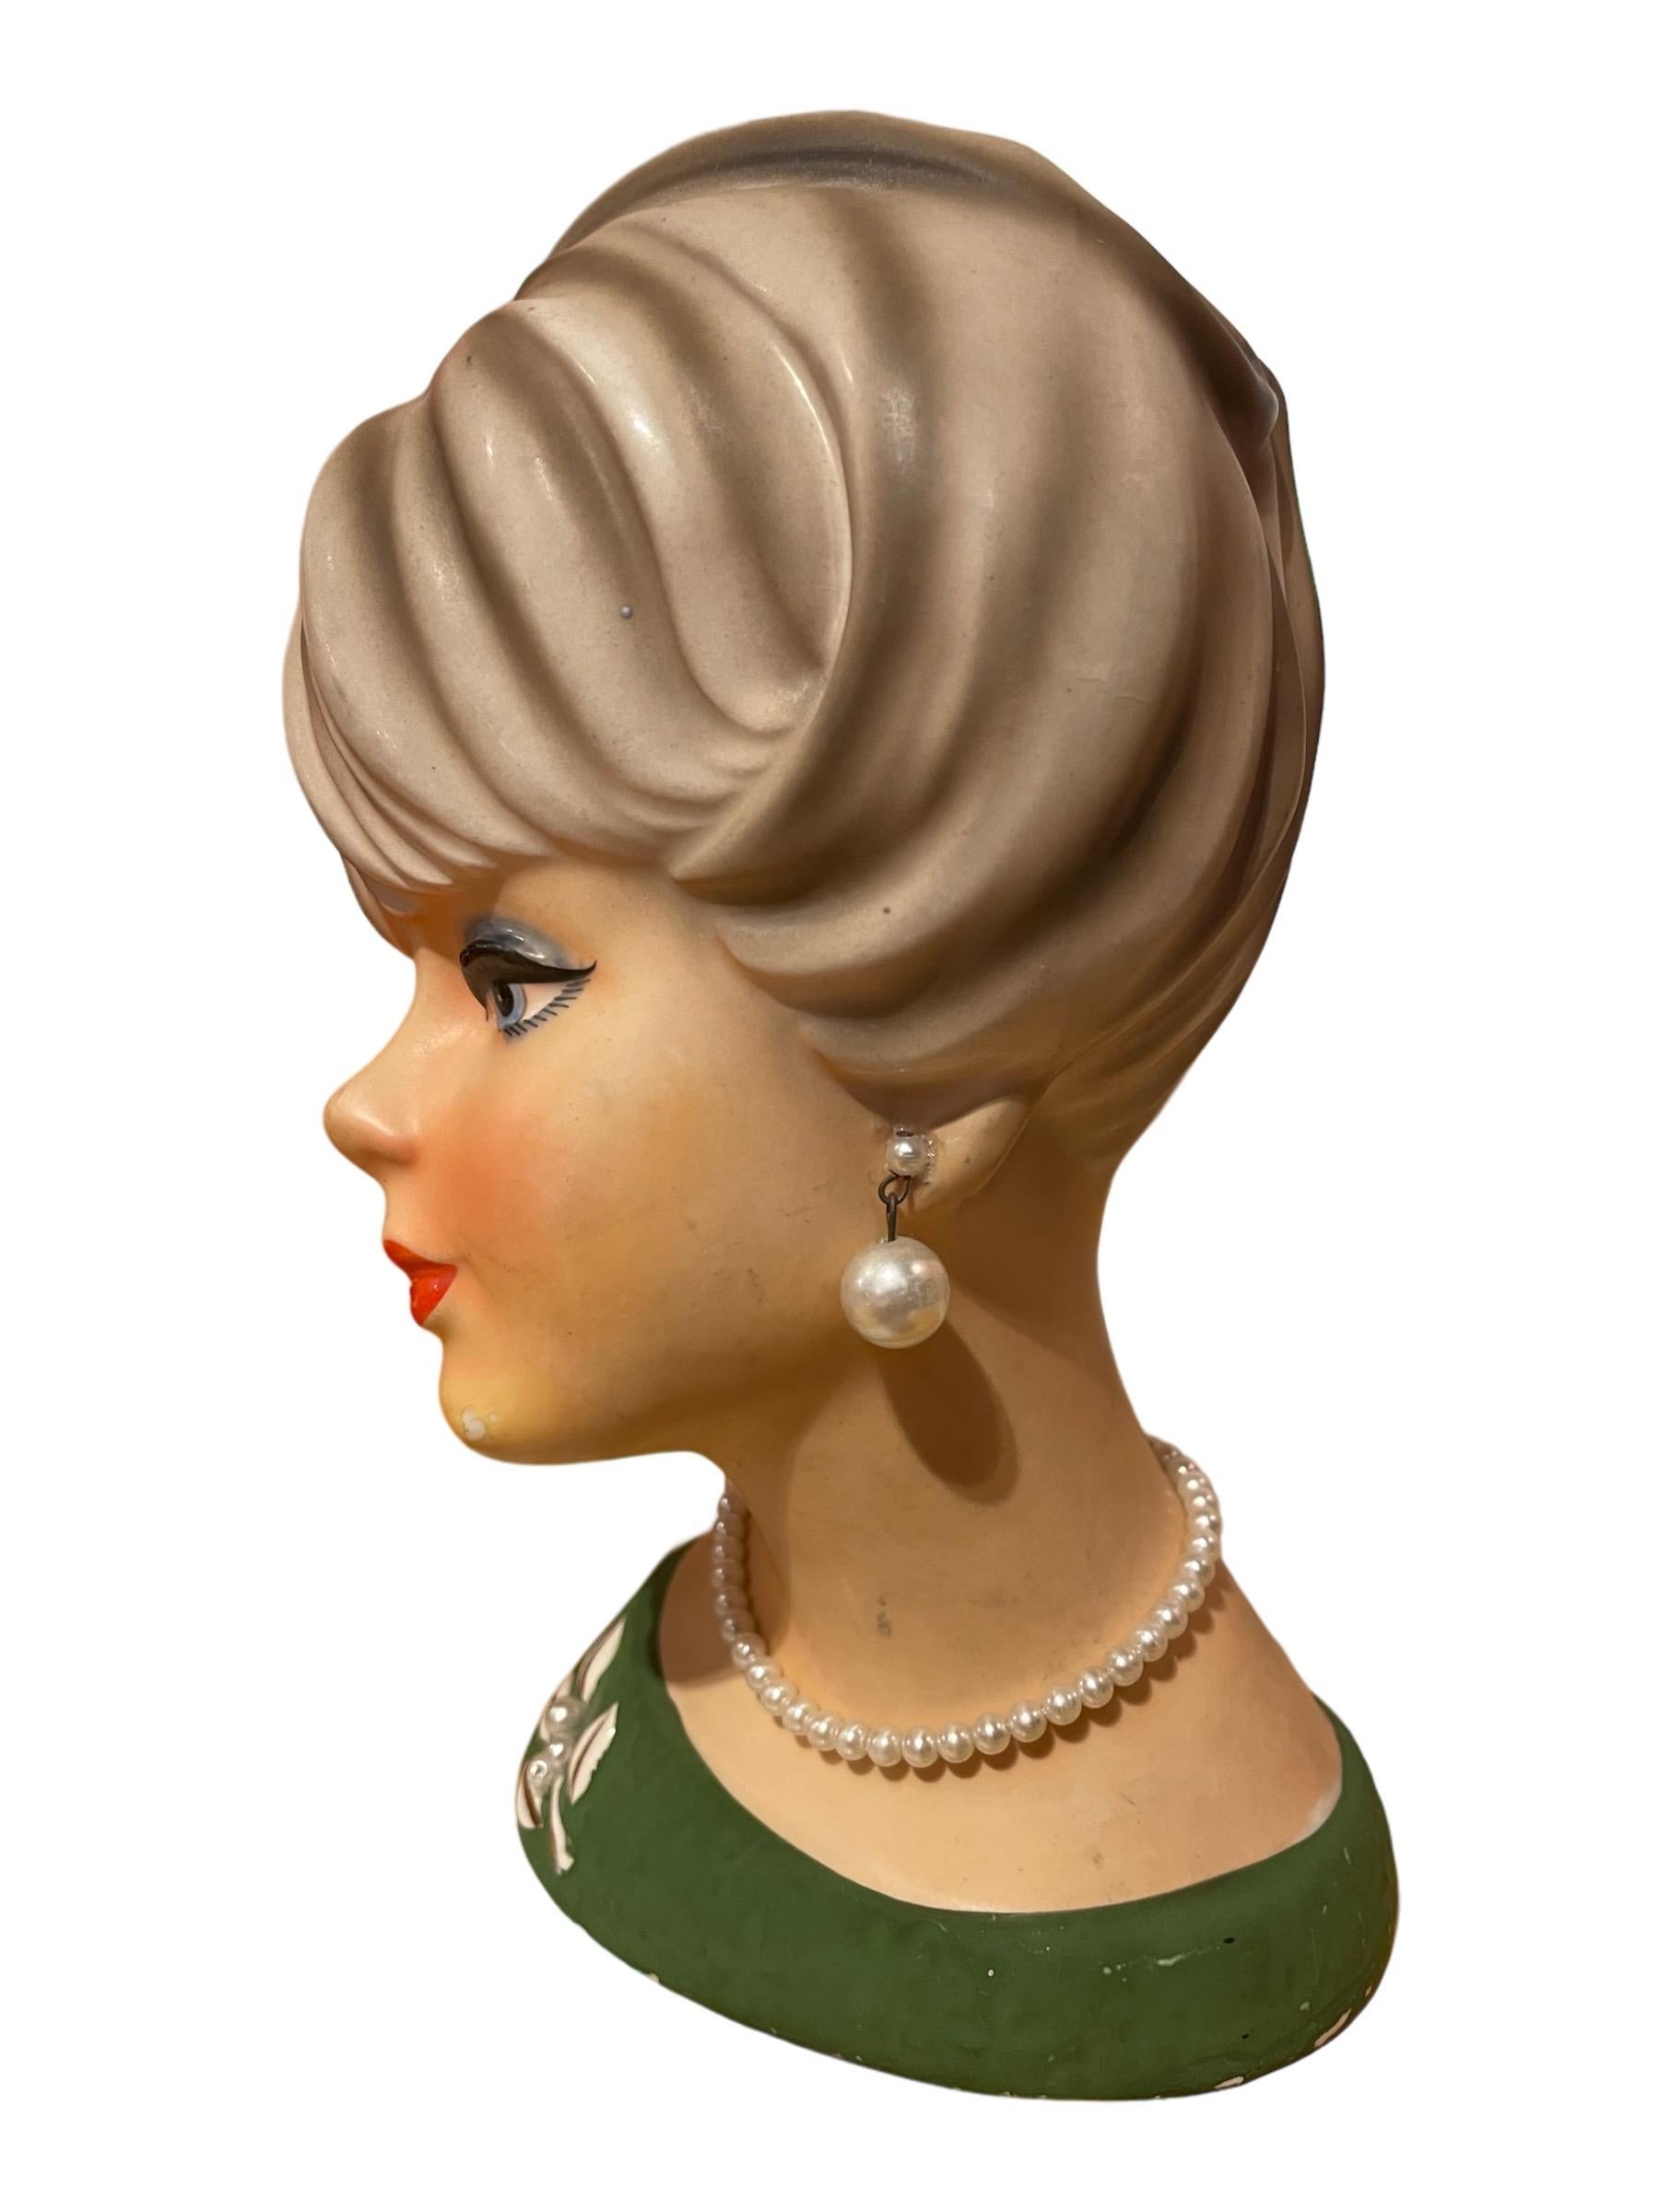 1950s Vintage Lady Head Napcoware Vase mit Perlen Ohrringe und Halskette

Bezaubernde Kopfvase einer Dame aus den 1950er Jahren mit baumelnden Perlenohrringen und Perlenkette. Sie trägt eine grüne Bluse mit perlenbesetzter Brosche.

Kleiner